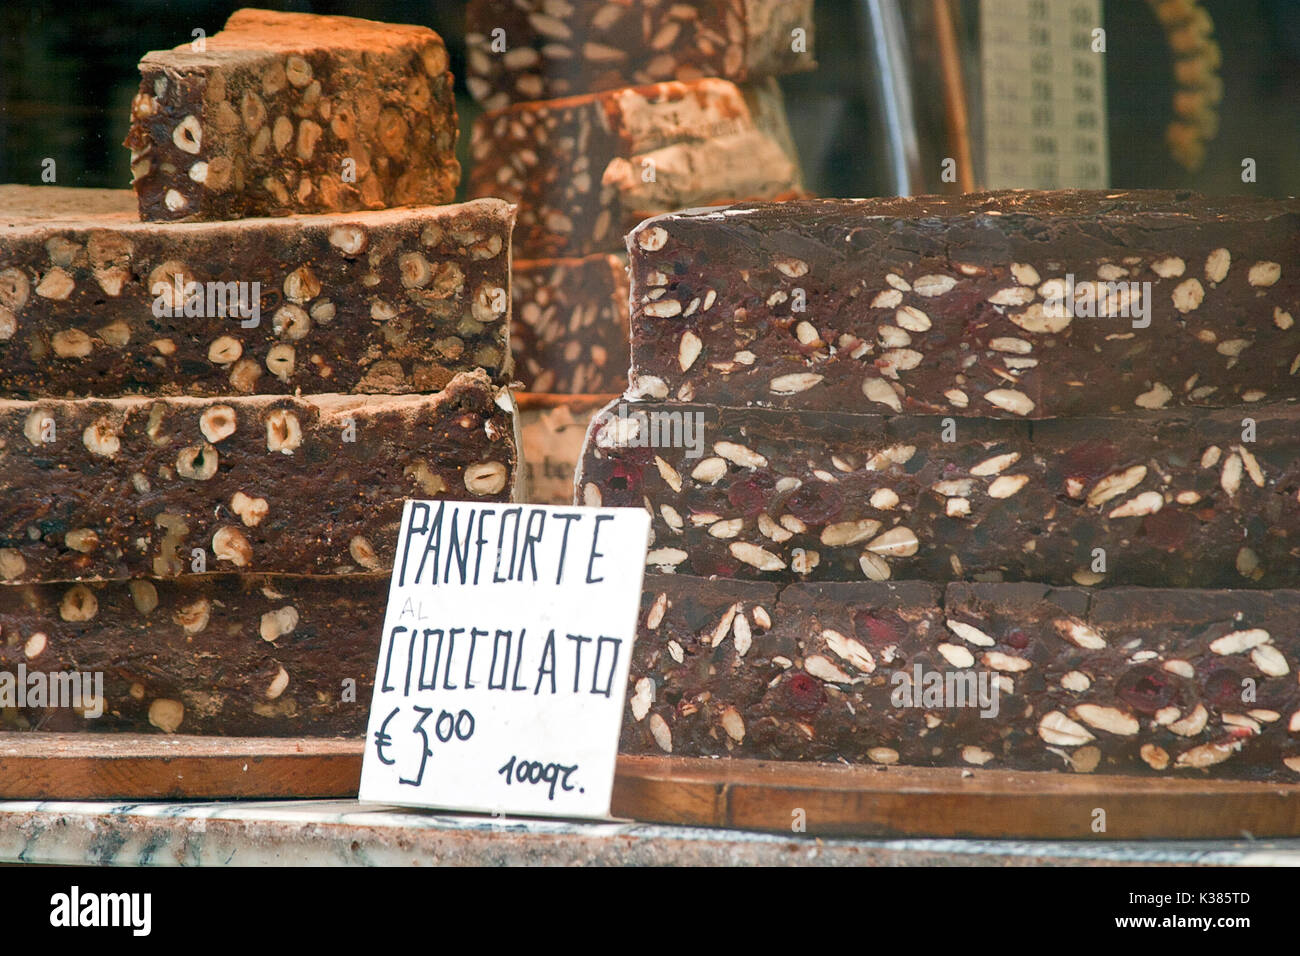 Panforte Cioccolato, un gâteau au chocolat originaire de Toscane, attend les clients affamés à San Gimignano, Toscane, Italie. Banque D'Images